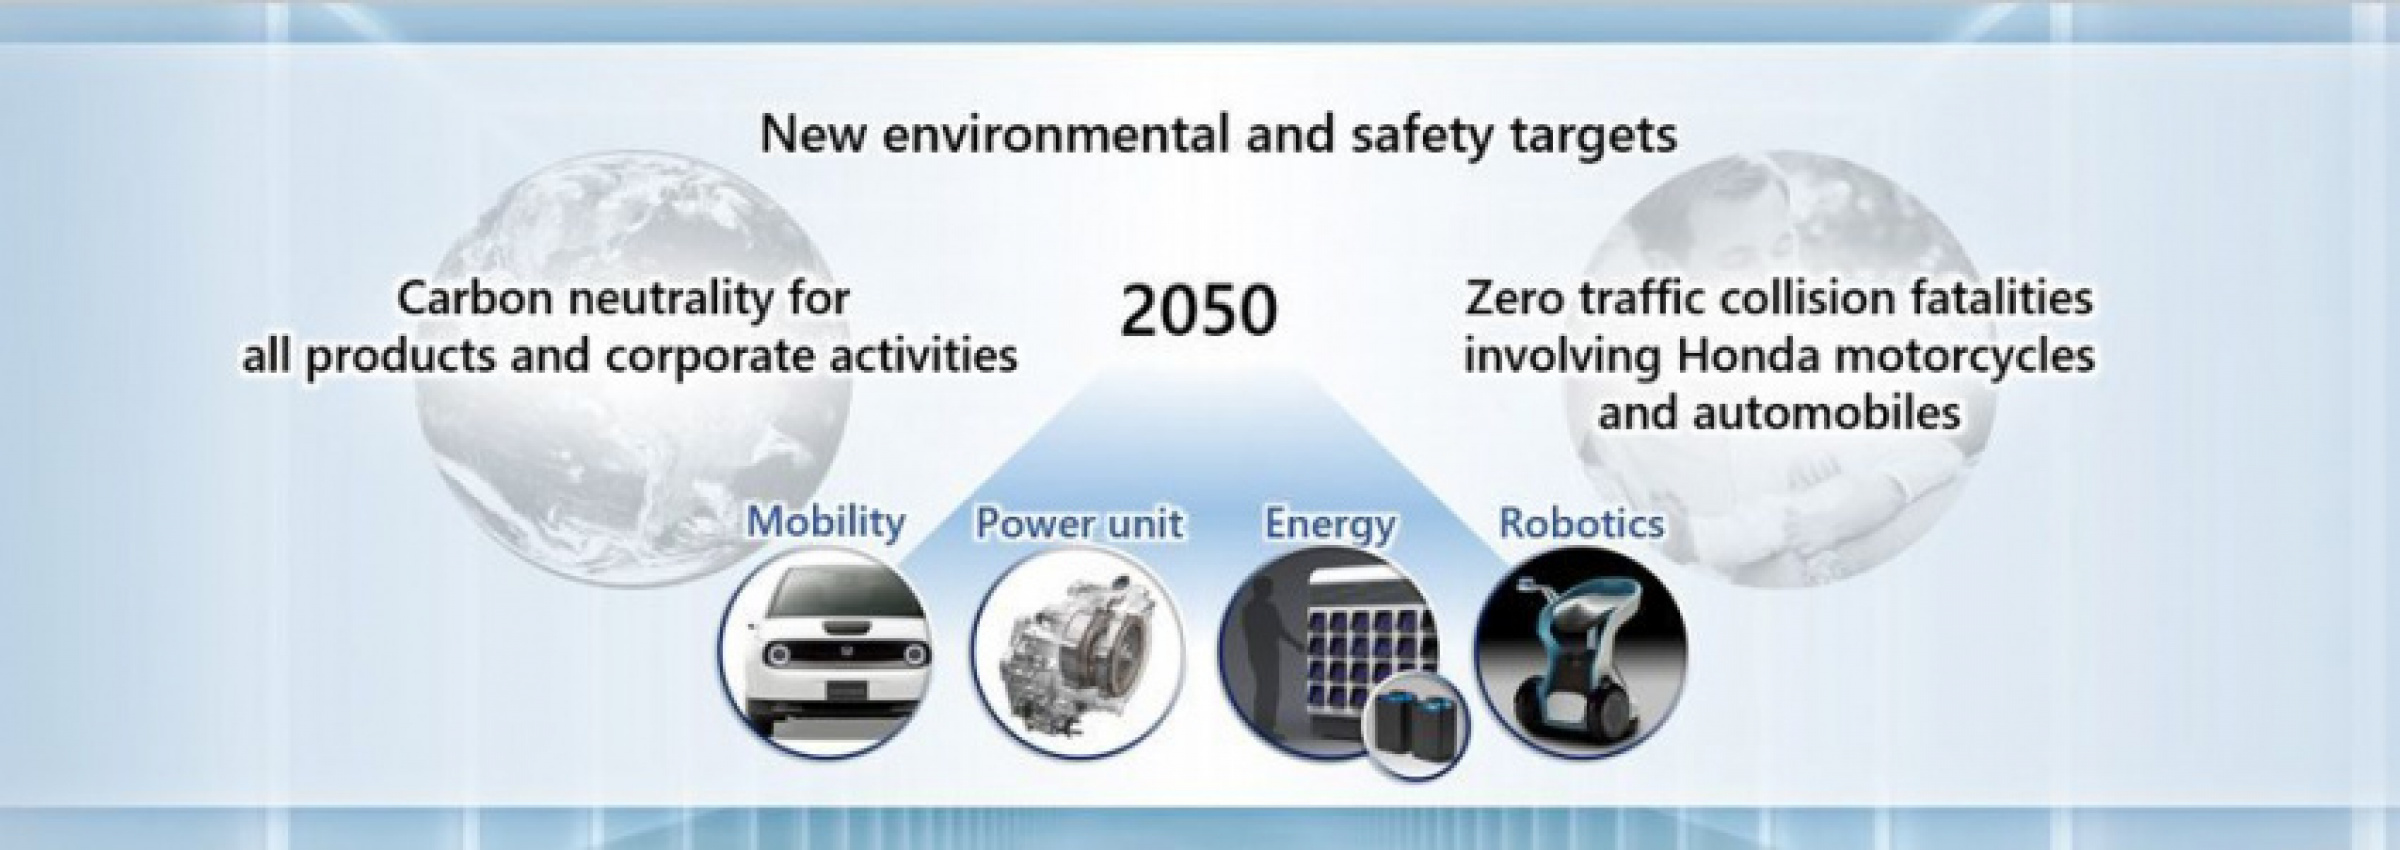 autos, cars, honda, auto news, bev, fuel cell, honda e, honda plans, target, vtec, honda plans to kill all vtecs and hybrids by 2040